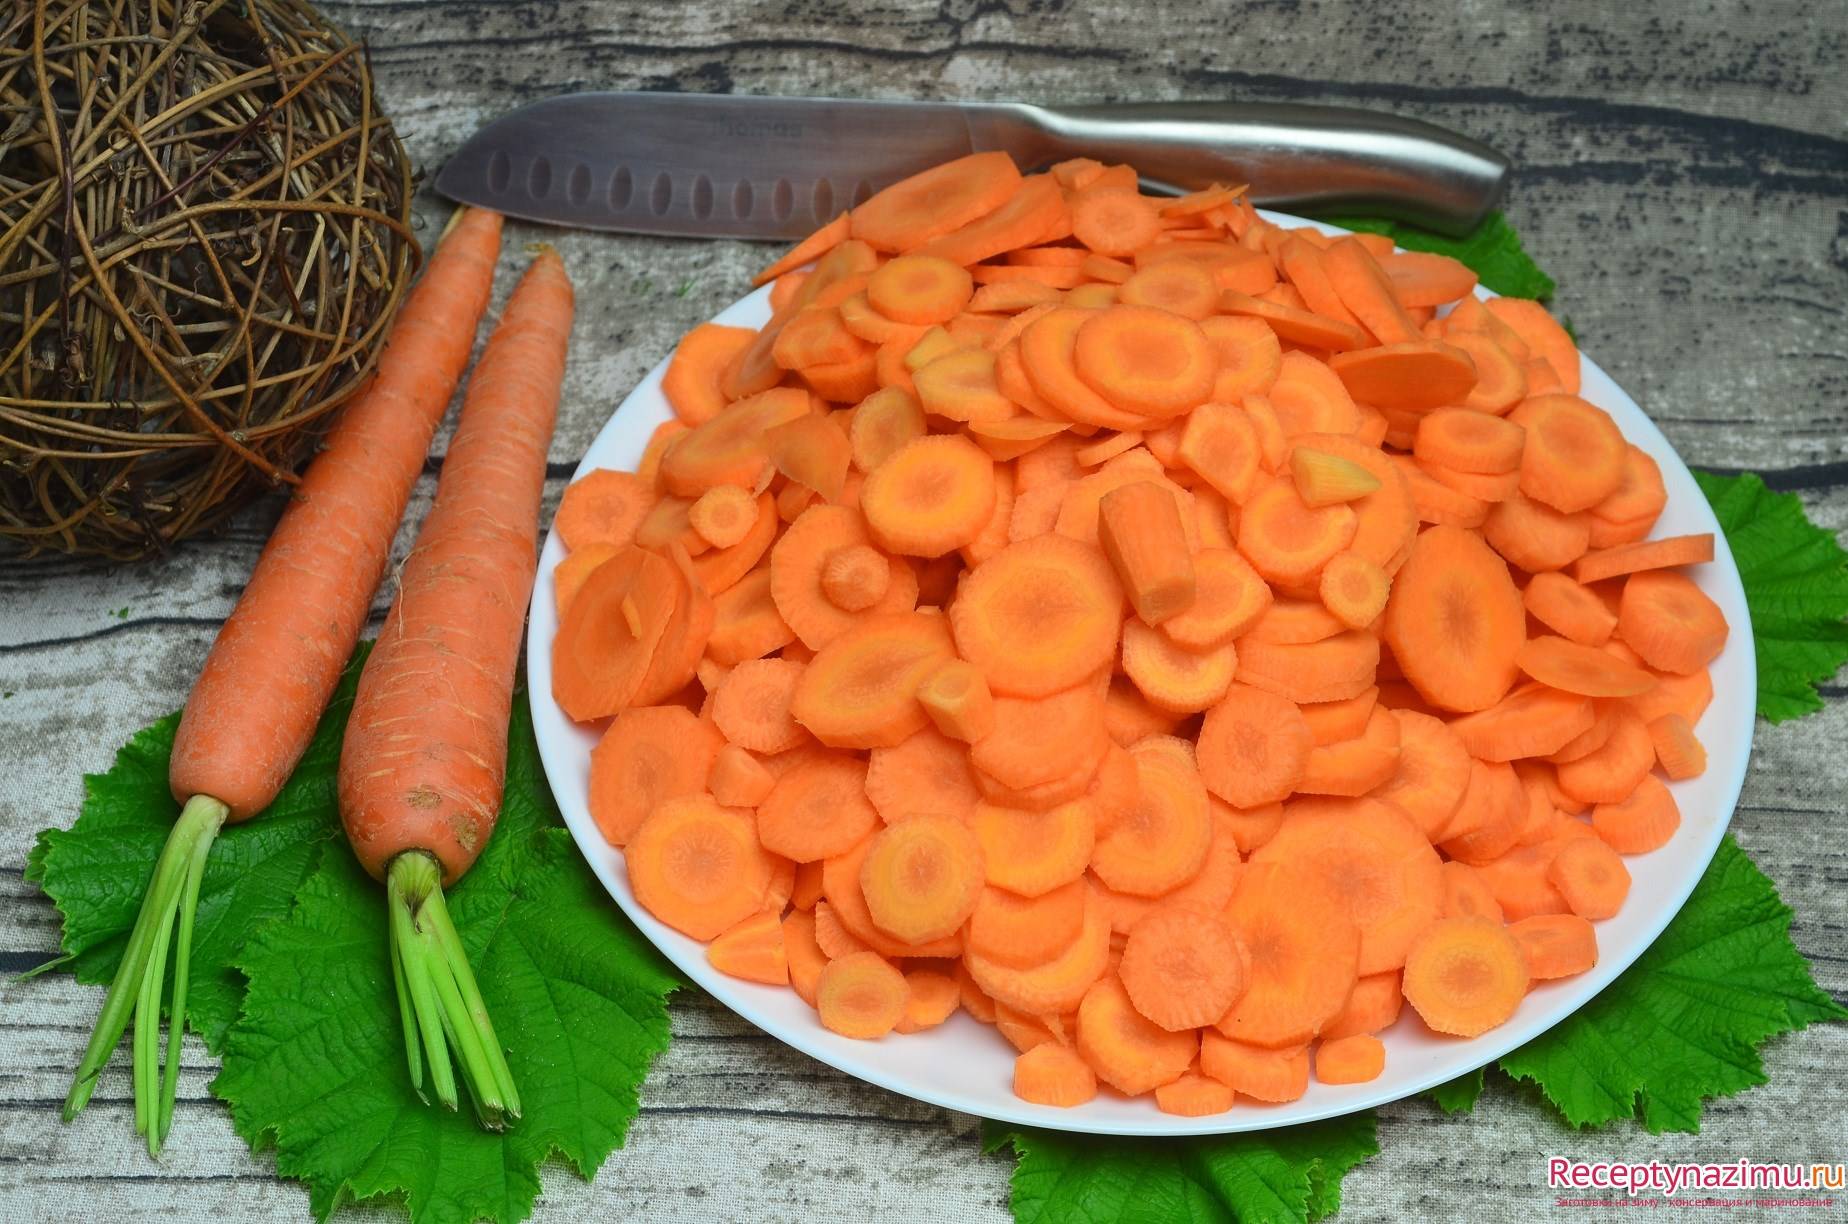 Как правильно сушить морковь в духовке, сохраняя ее витамины?